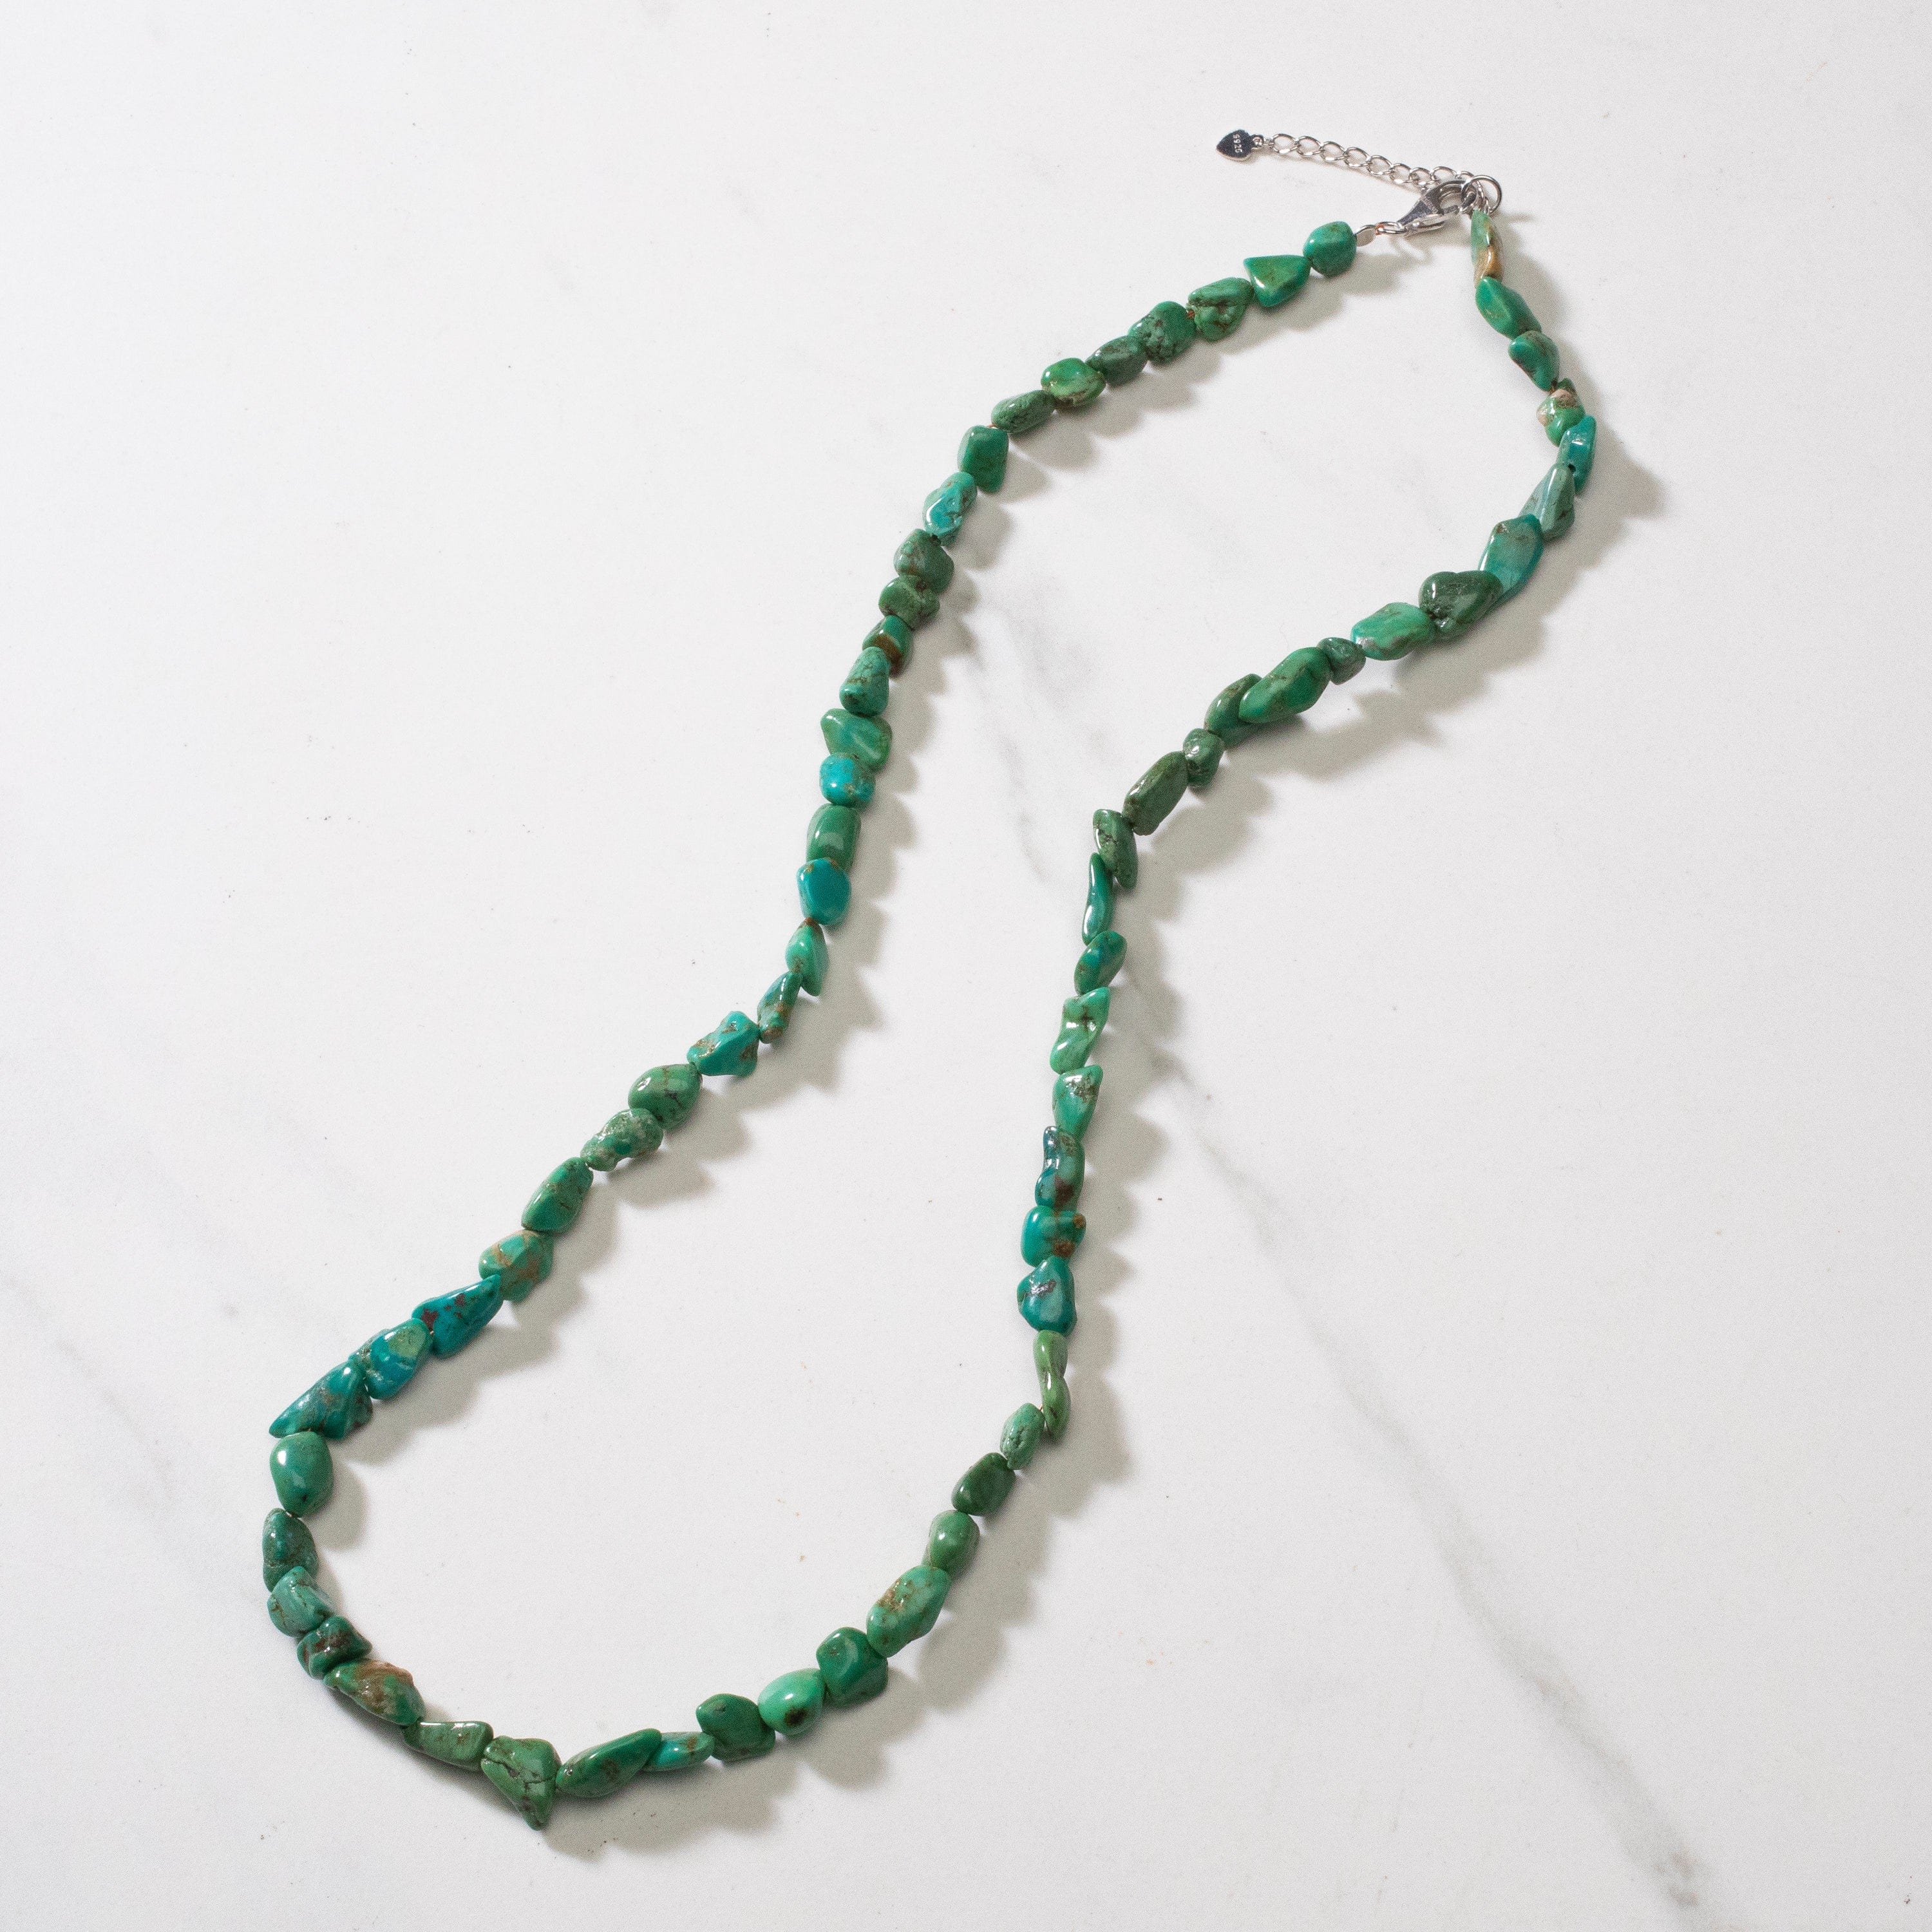 Kalifano Jewelry Anhui Turquoise Beaded Necklace - 24" NECK005